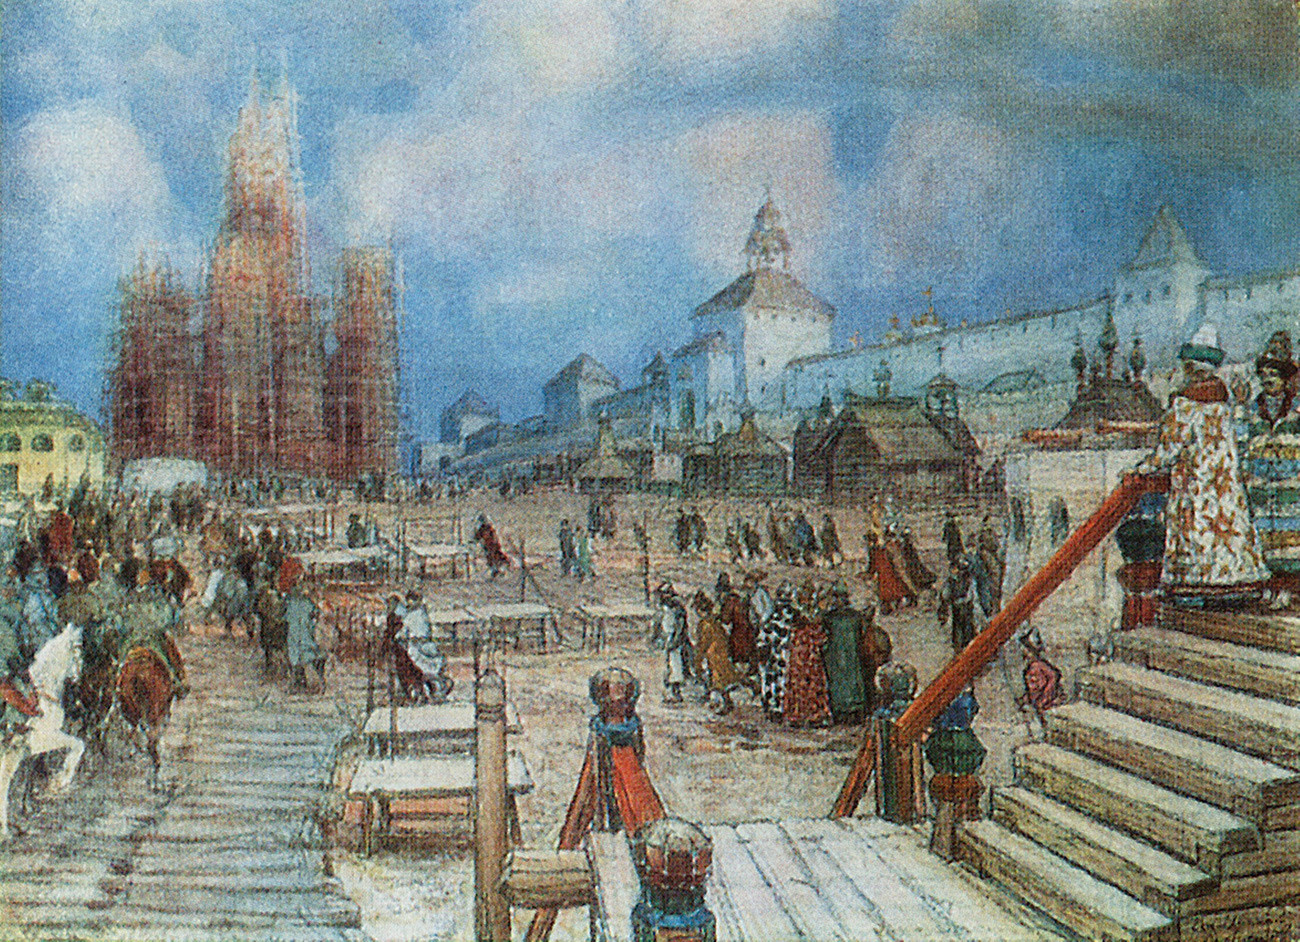 Lukisan “Lapangan Merah pada masa pemerintahan Ivan yang Mengerikan” karya Appolinary Vasnetsov. Pada lukisan itu, Katedral St. Basil tampak sedang dibangun.